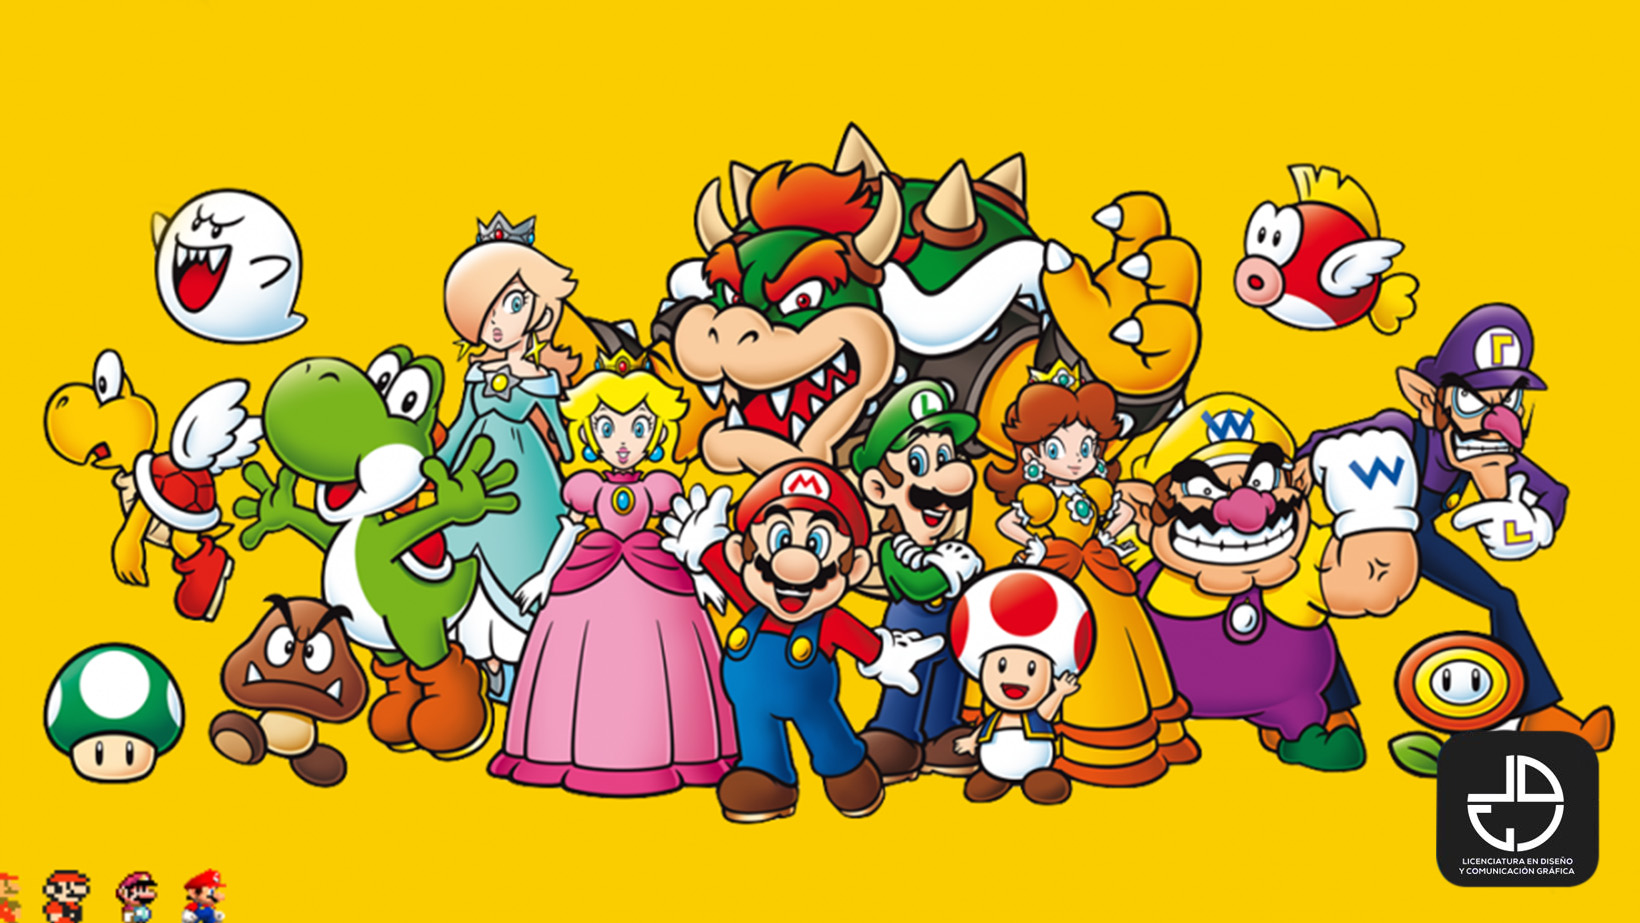 Imagen De Los Personajes De Mario Bros Reverasite